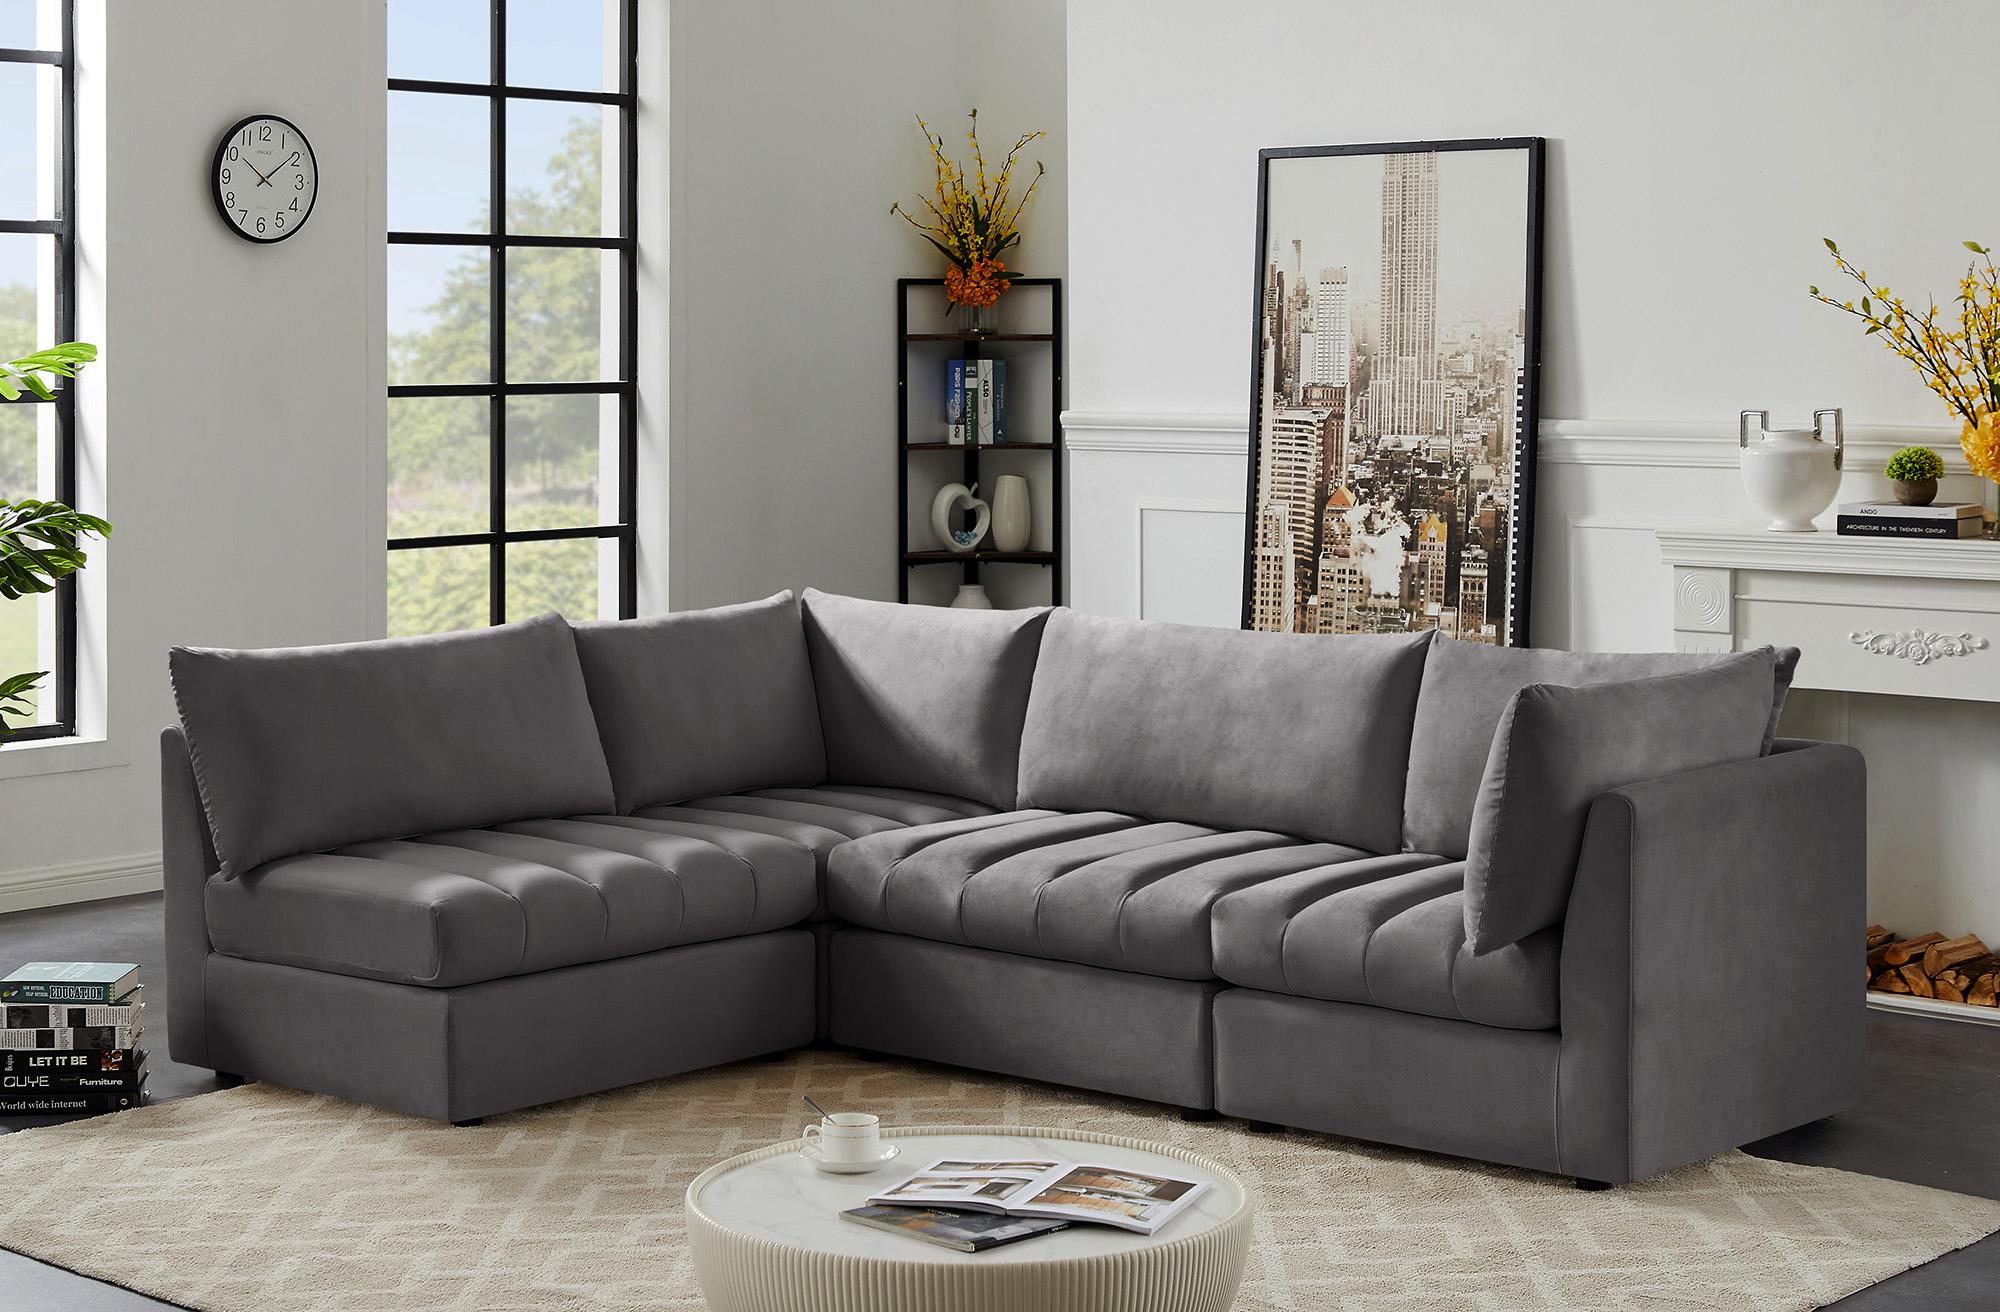 

    
Meridian Furniture JACOB 649Grey-Sec4A Modular Sectional Sofa Gray 649Grey-Sec4A
